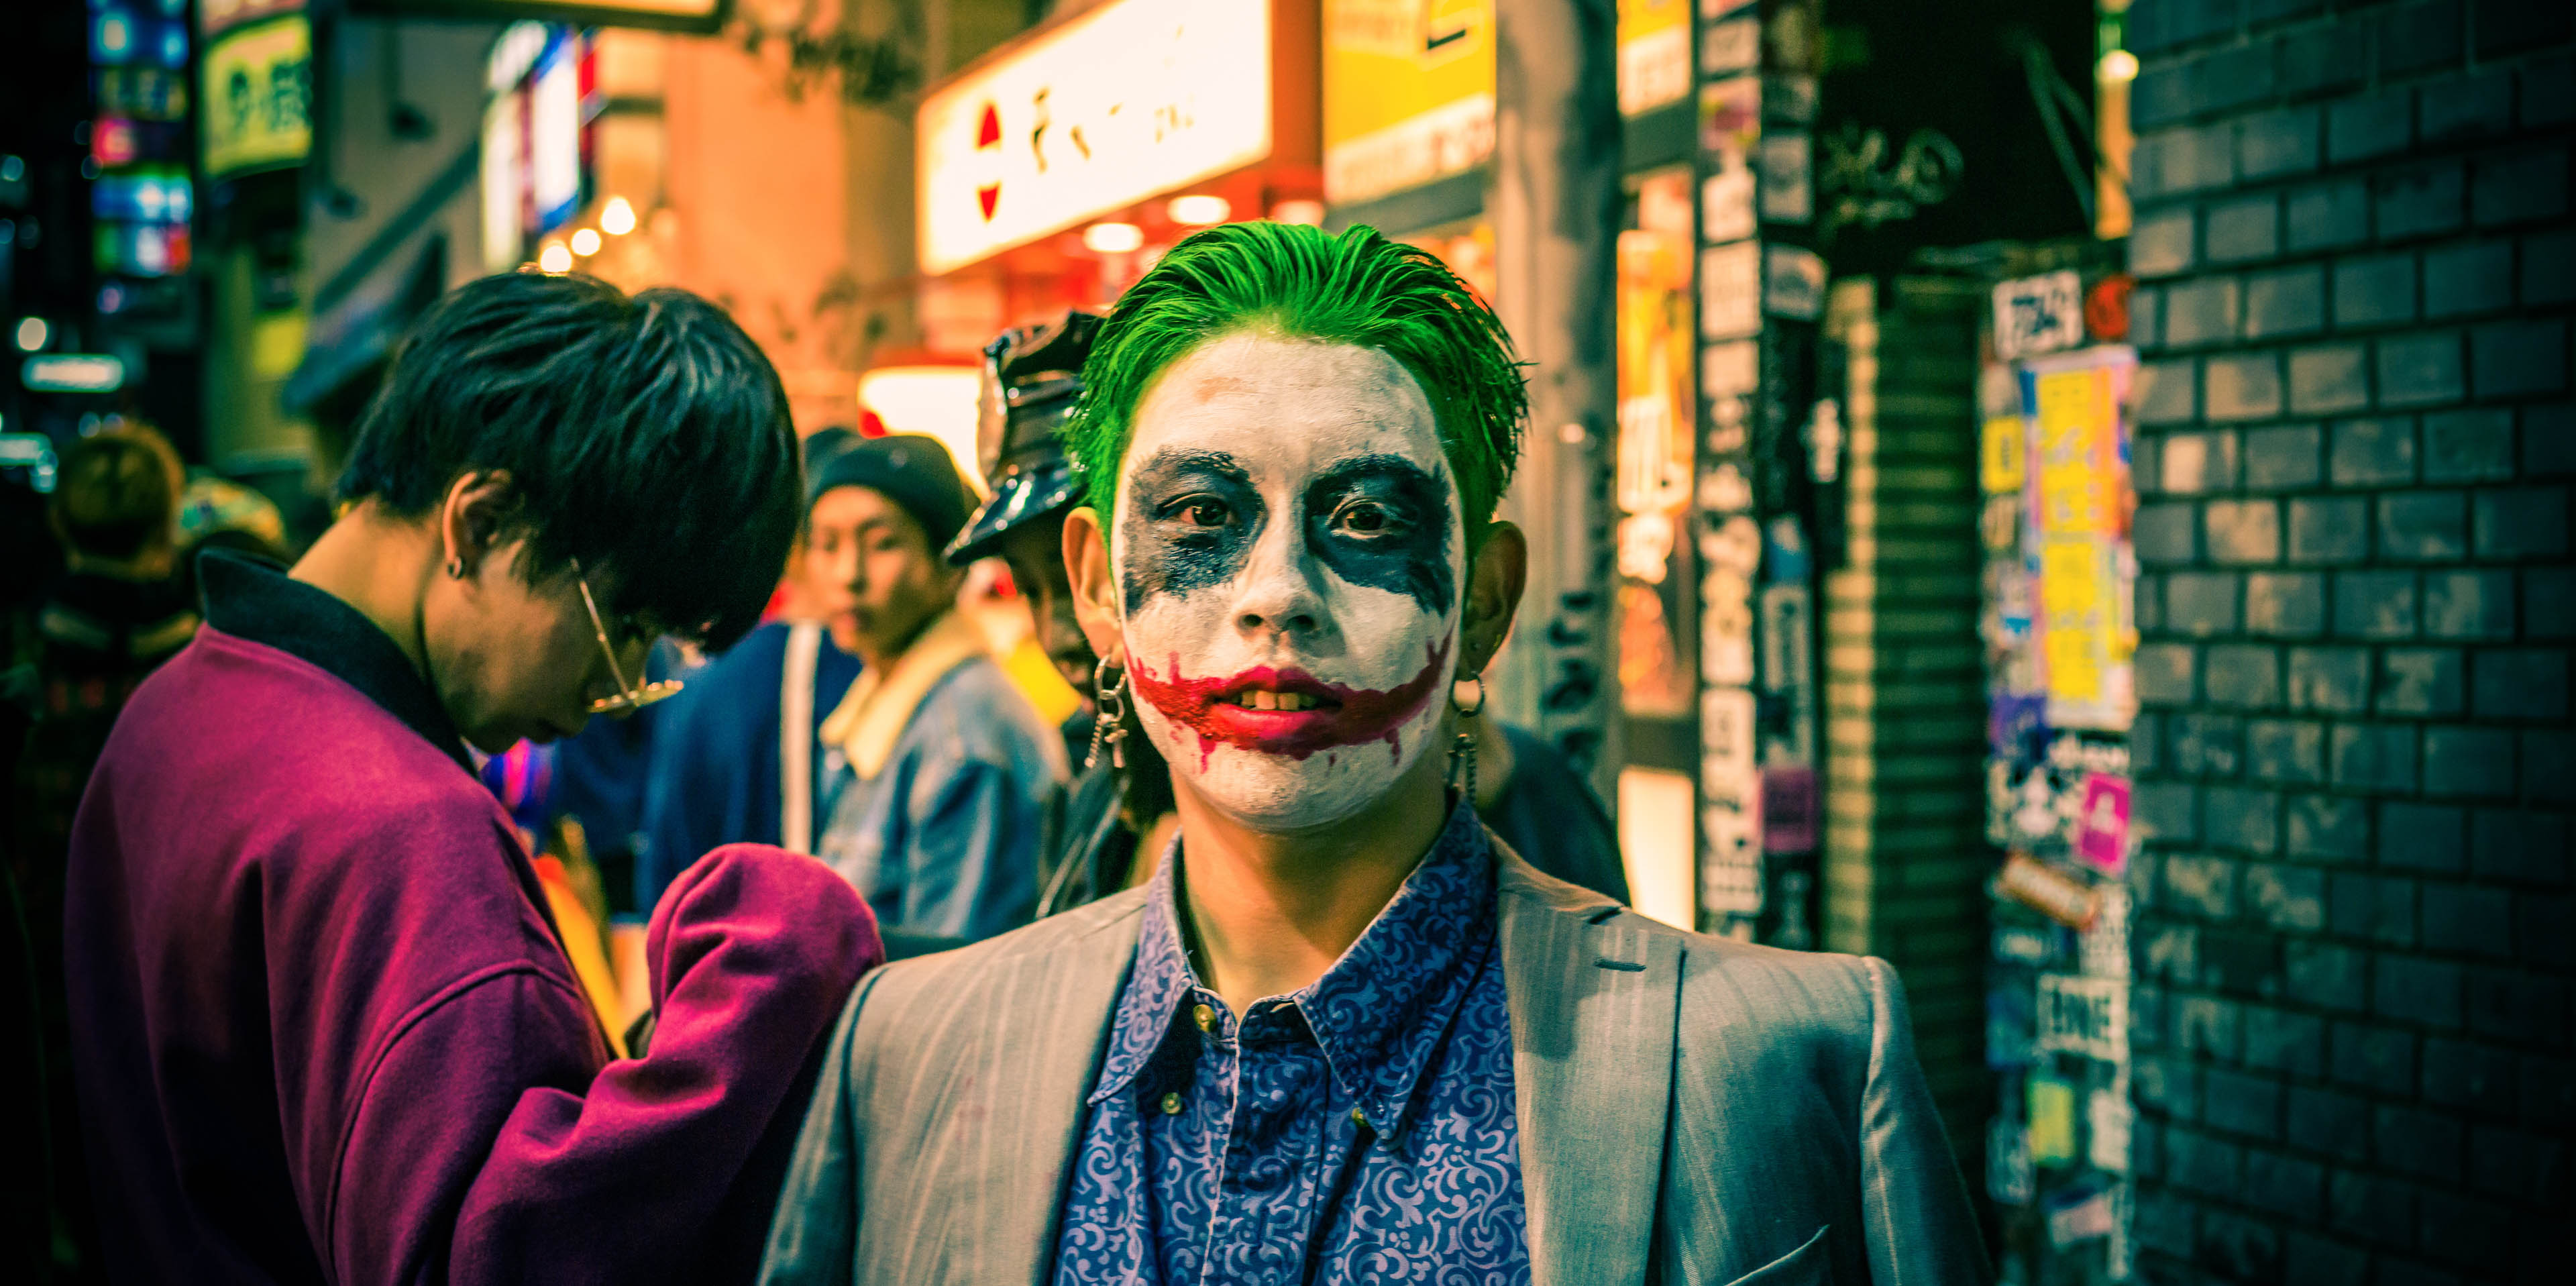 The Joker in Tokyo #0467